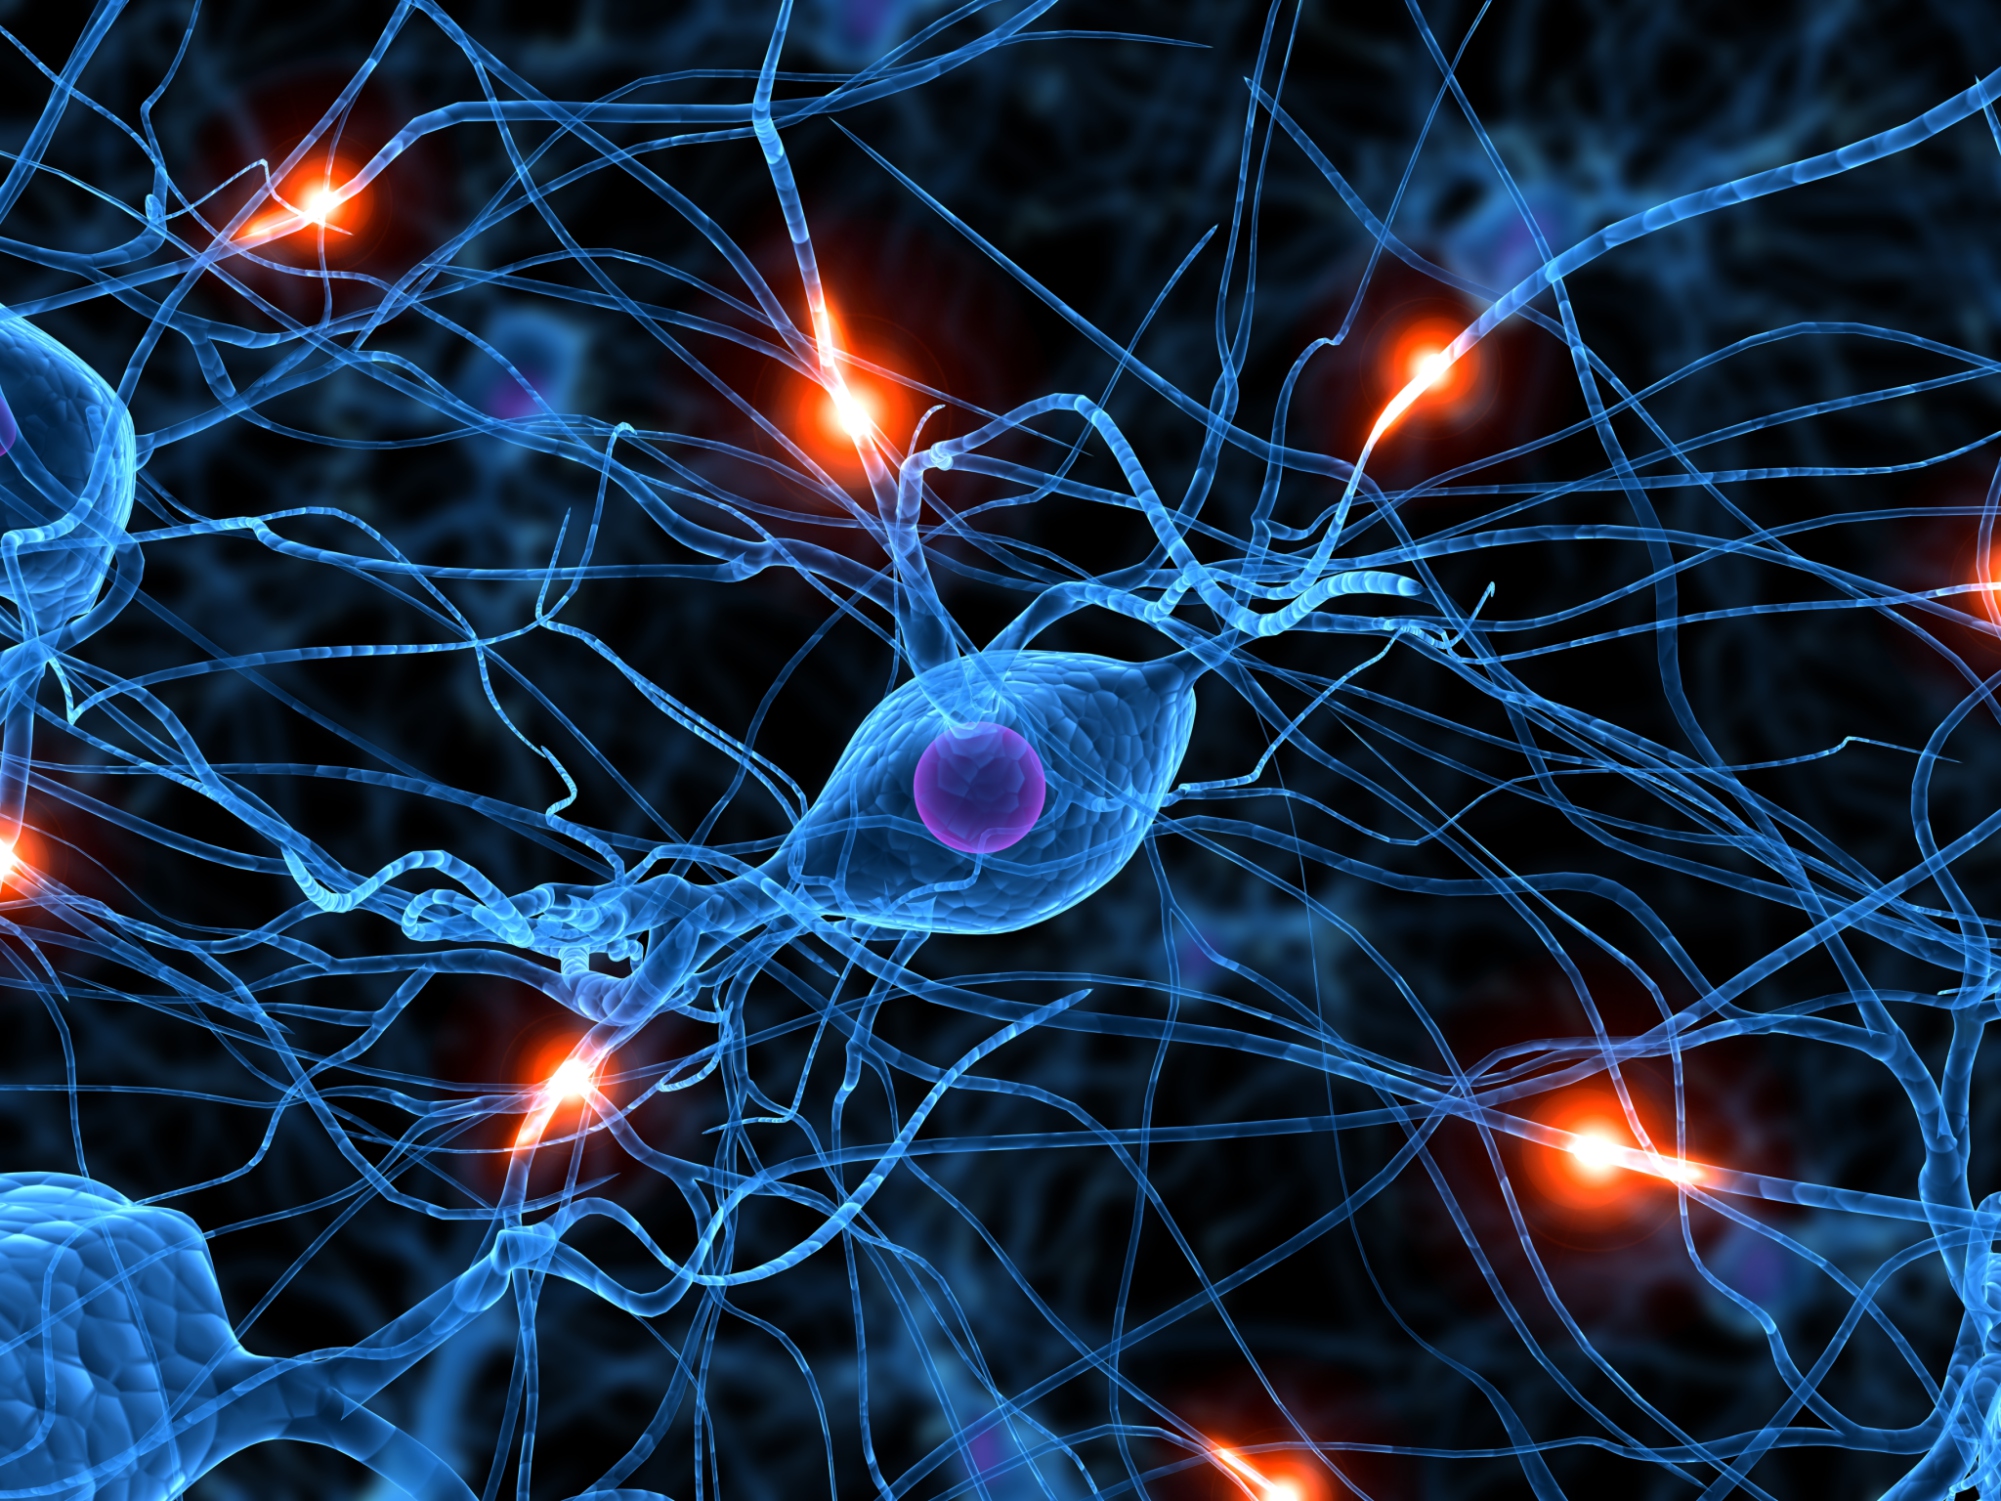 Aktivierte Nervenzellen produzieren ein Schutzprotein